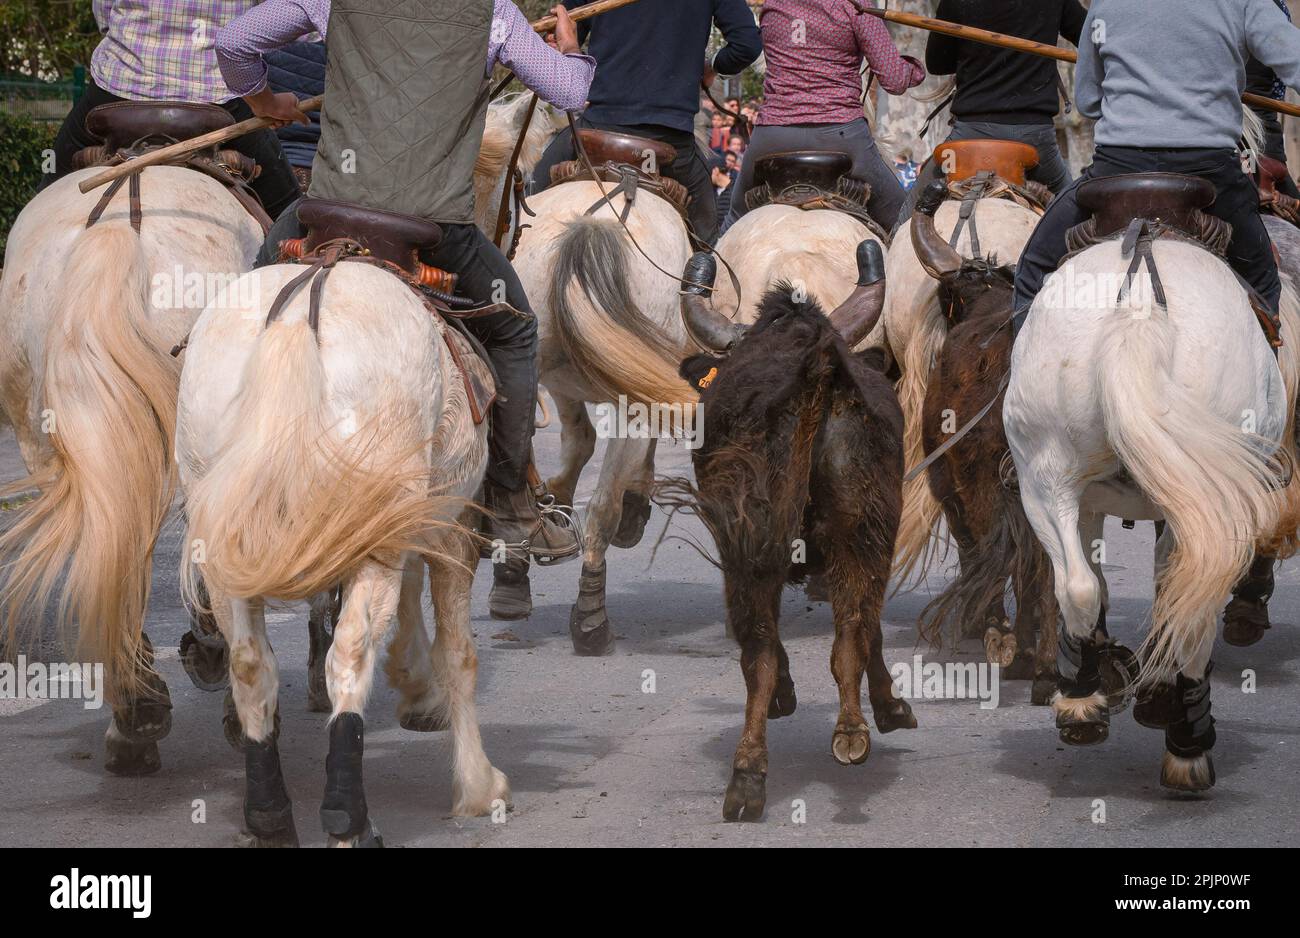 Bandido und Abrivado in einer Dorfstraße im Süden Frankreichs. Camargue-Bulle läuft frei in einer Straße. Stierkampf-Tradition. Stockfoto